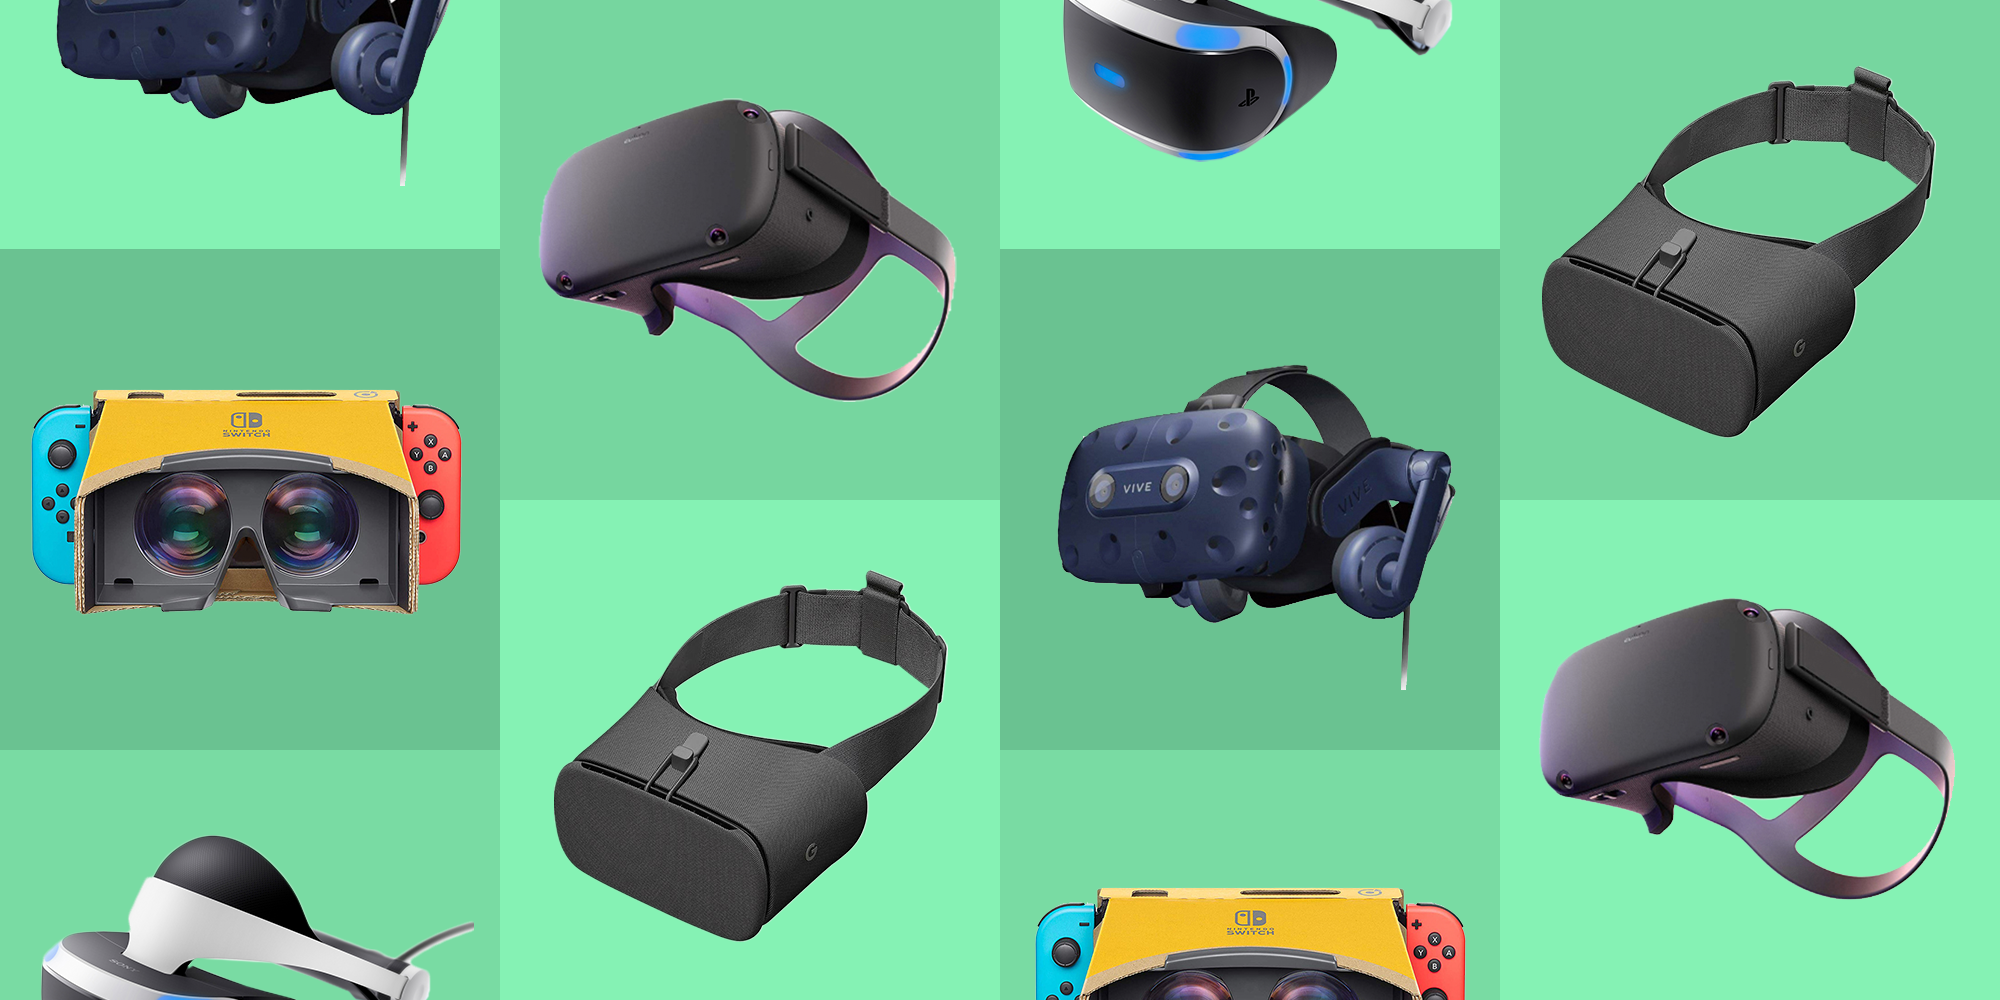 Mua kính VR - Những điều cần lưu ý